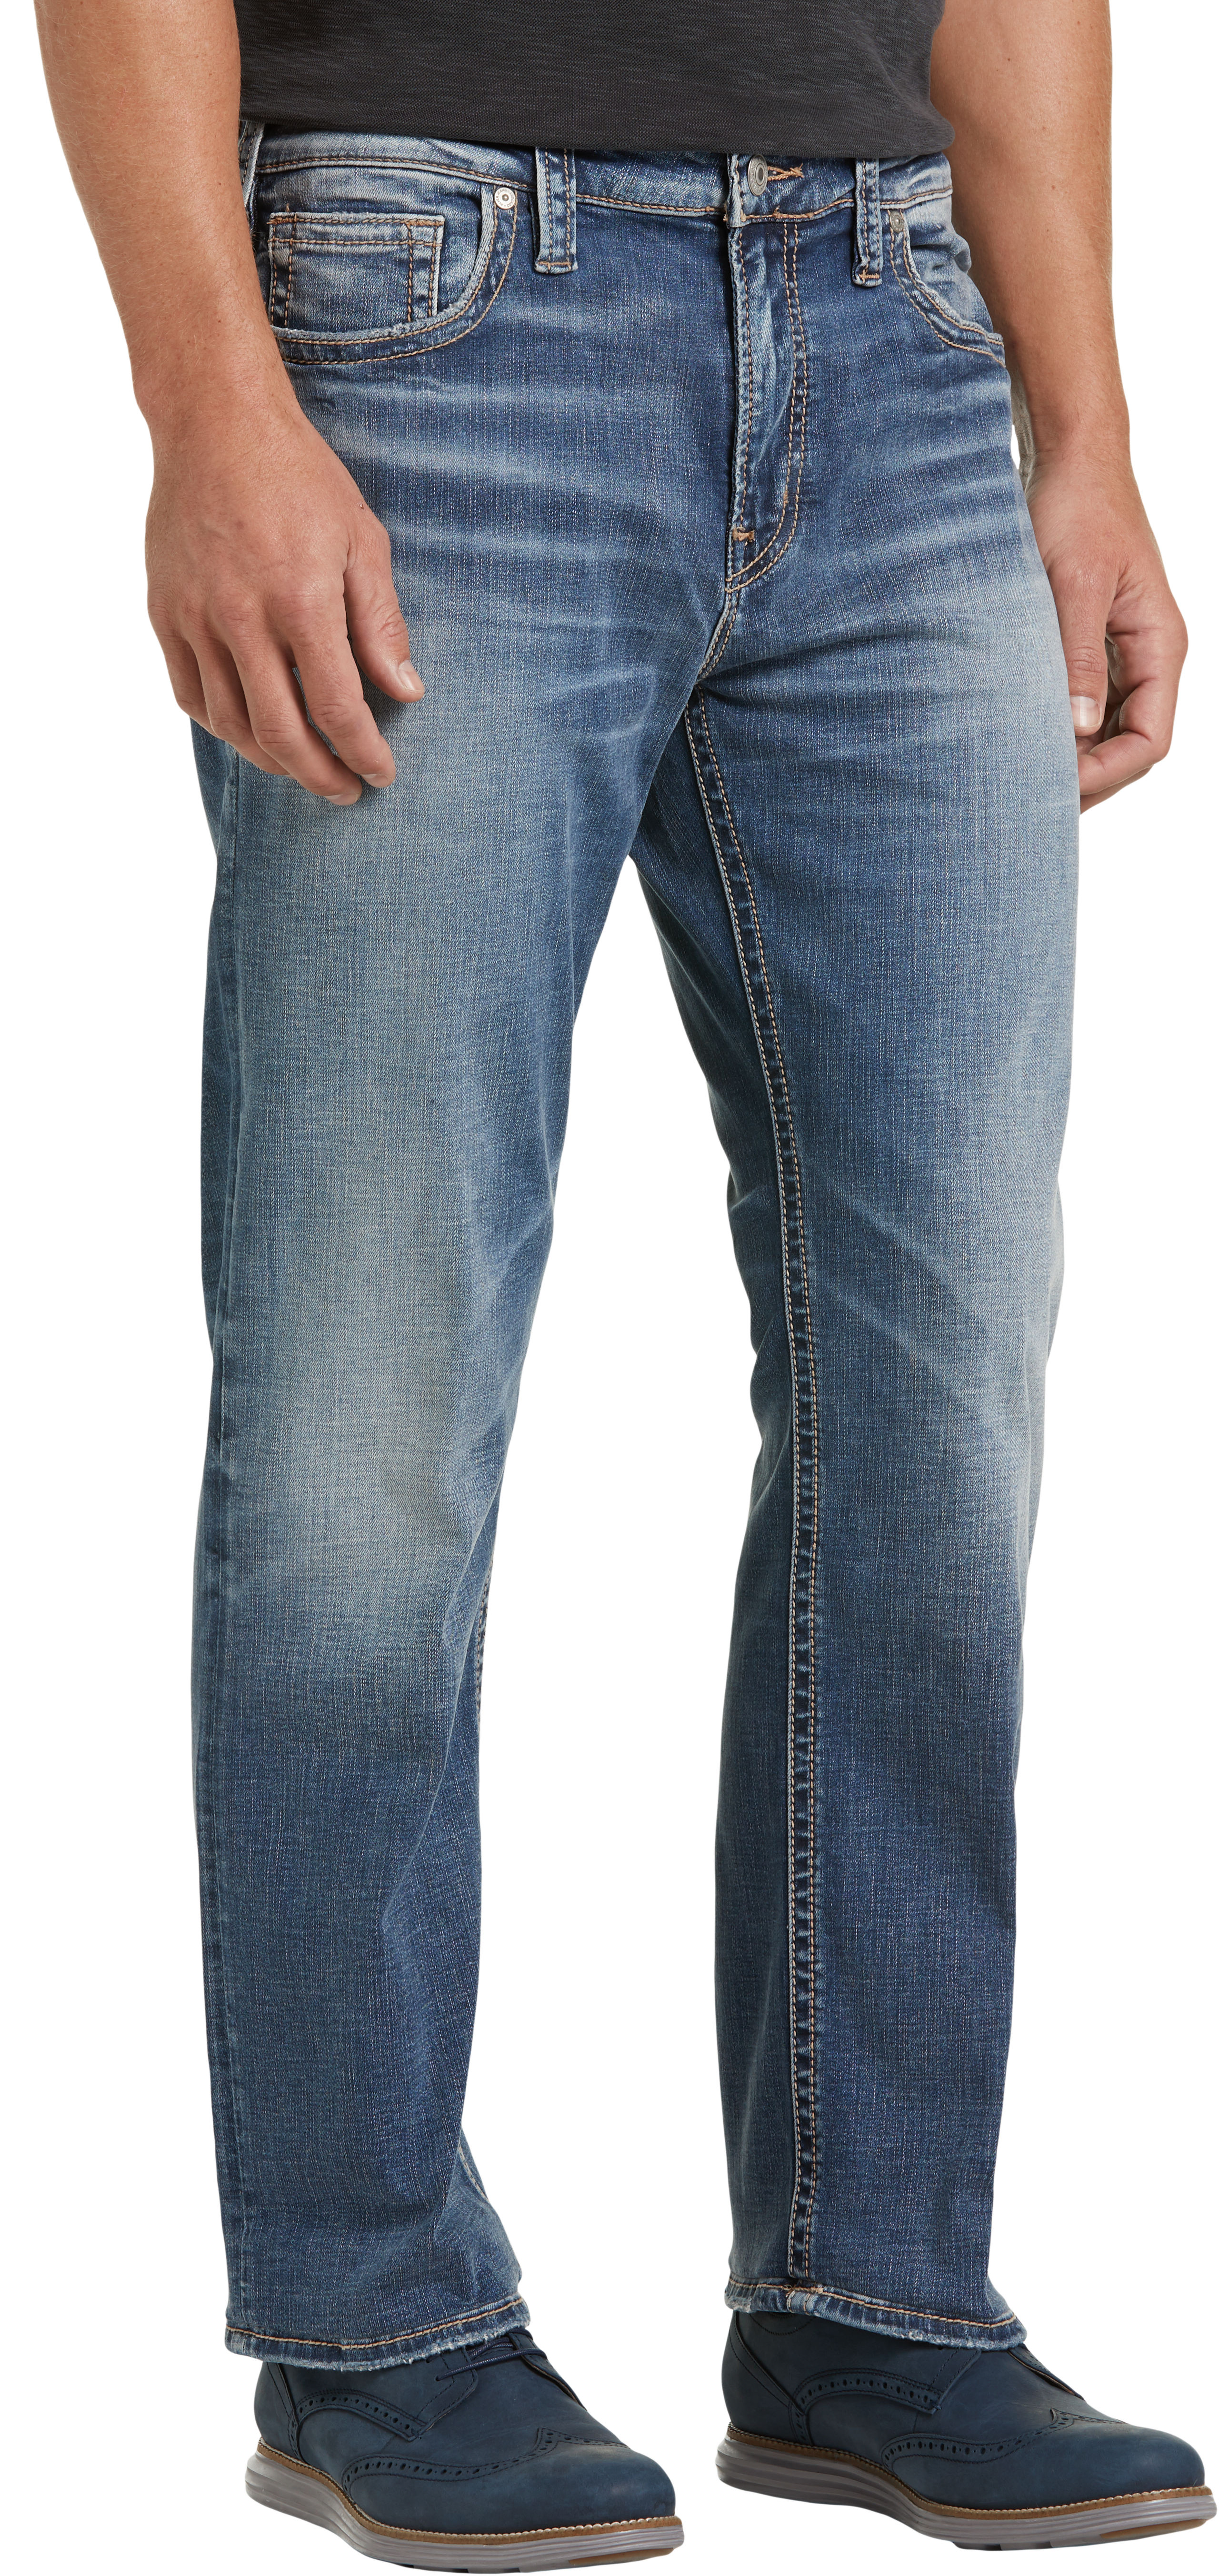 Silver Jeans Co. Grayson Medium Blue Wash Classic Fit Jeans - Men's ...